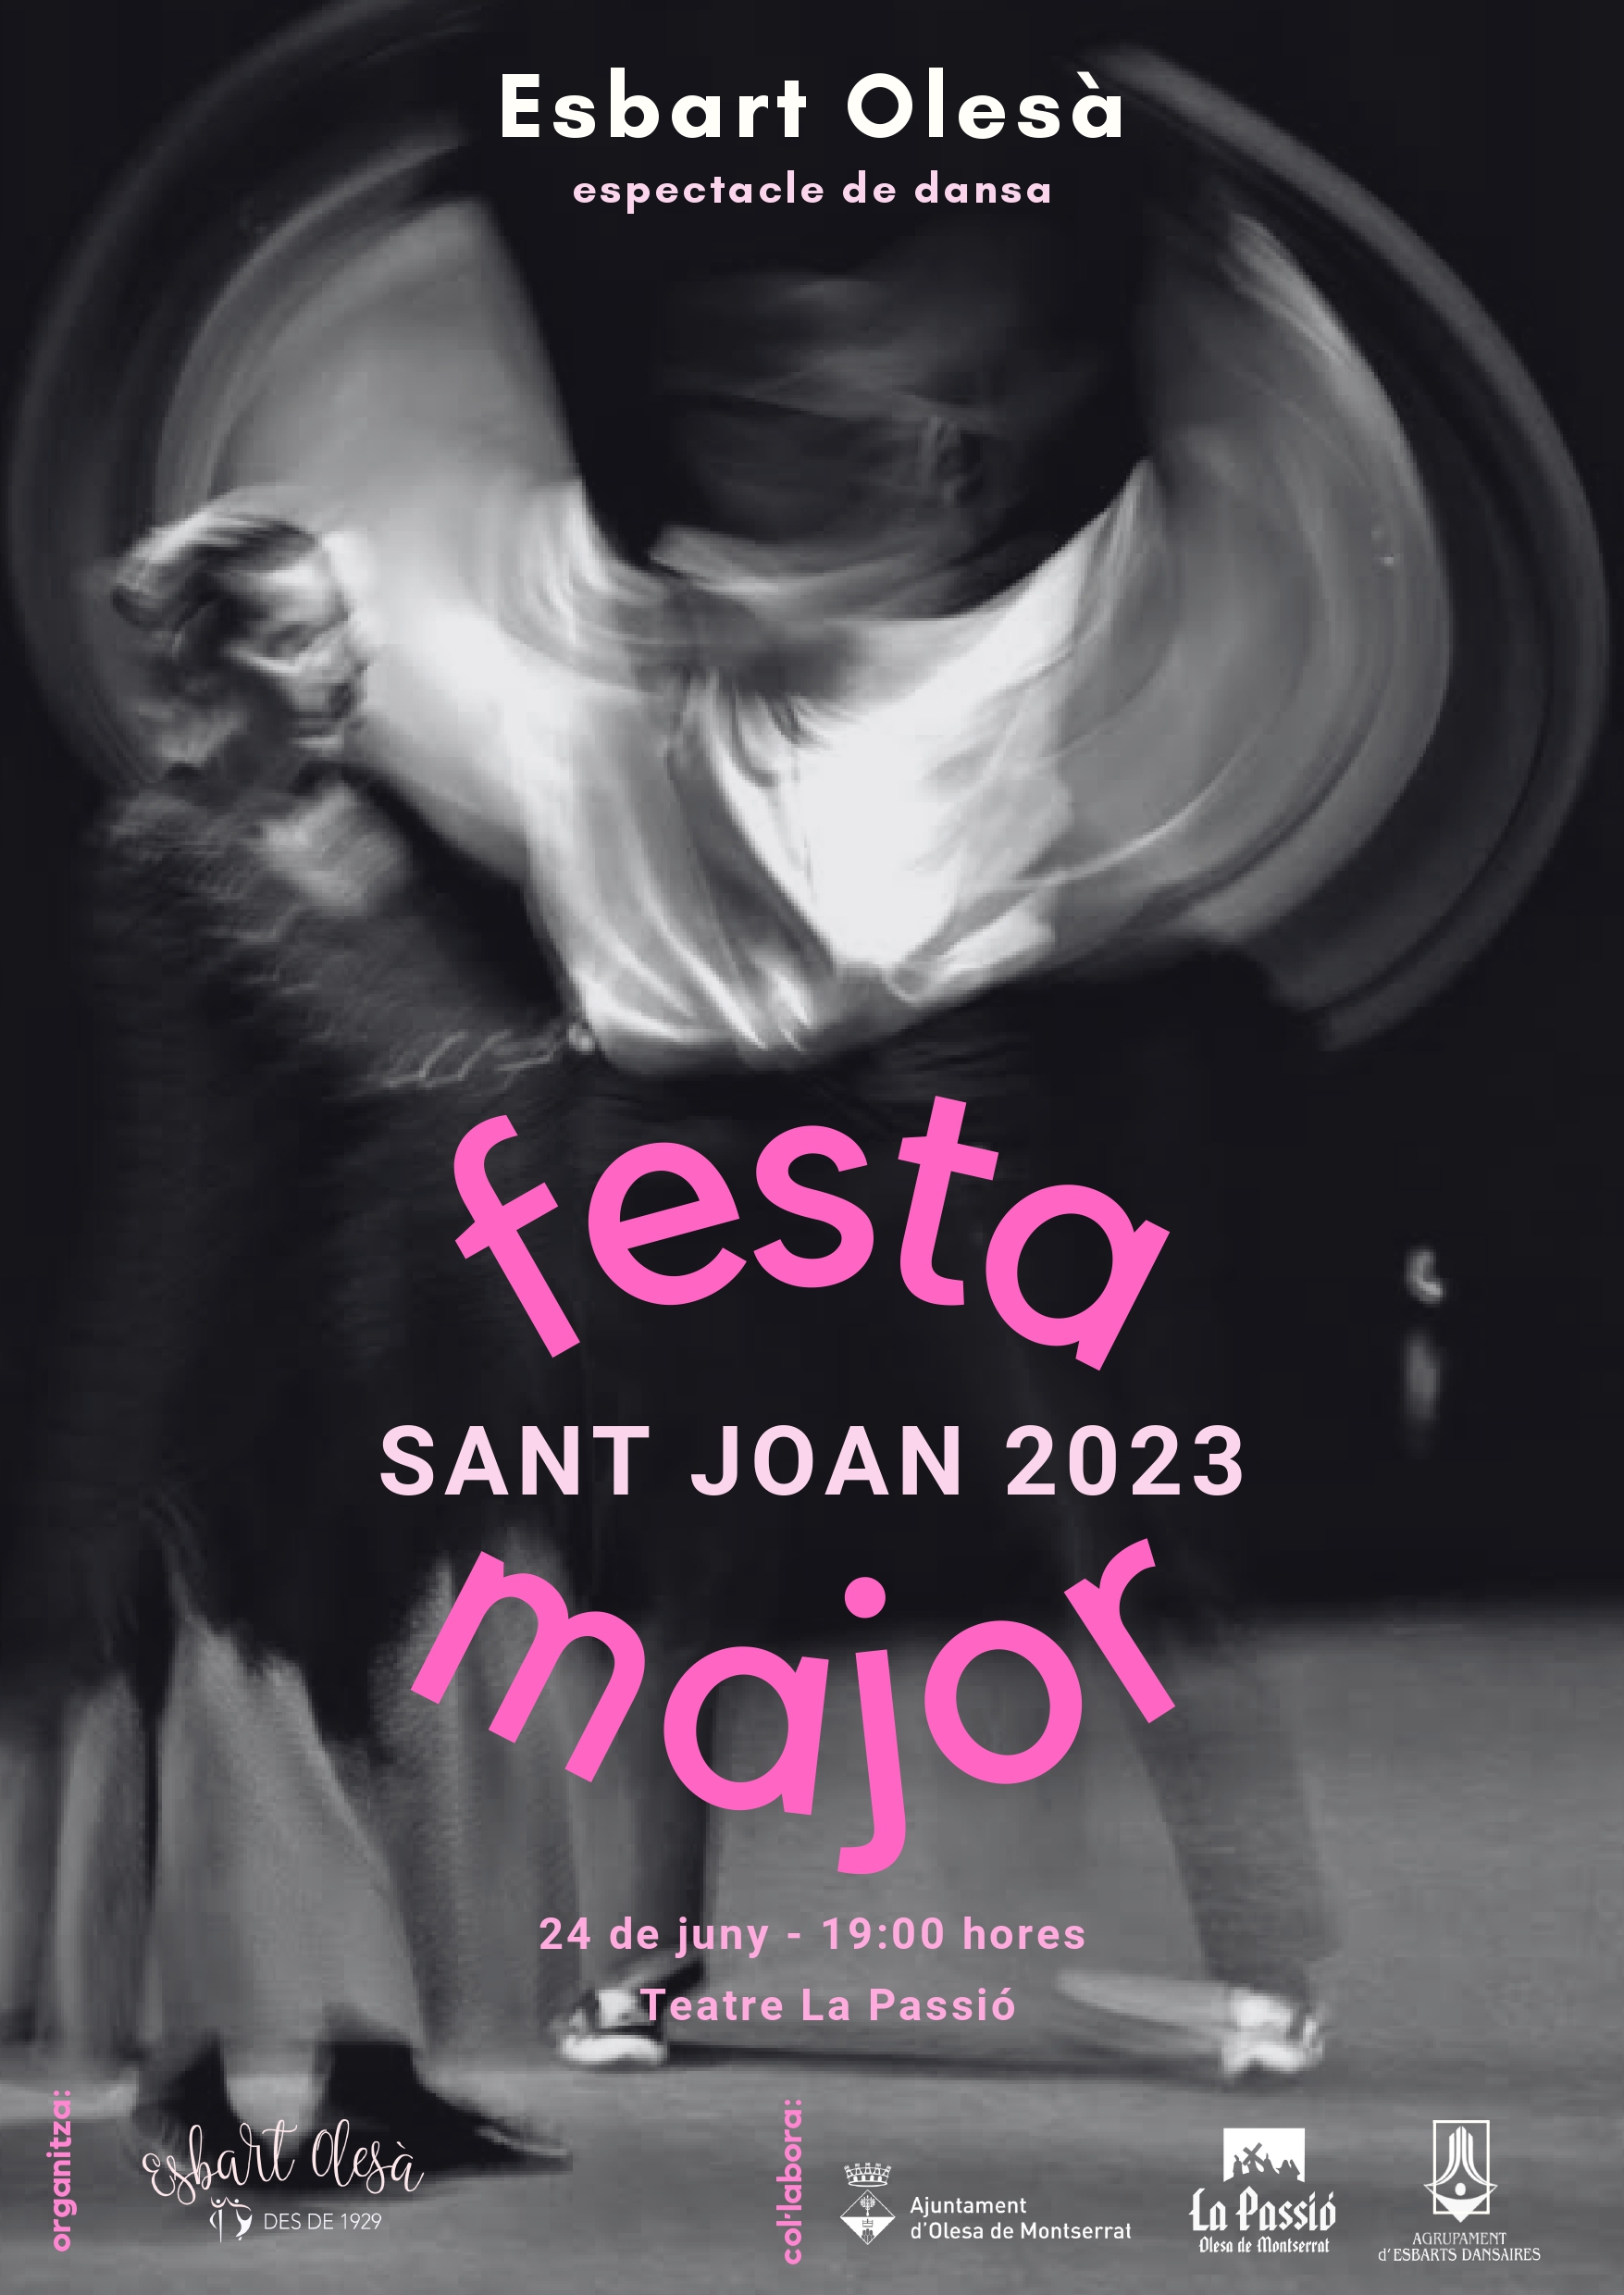 Espectacle de dansa de Festa Major 2023 de l'Esbart Olesà